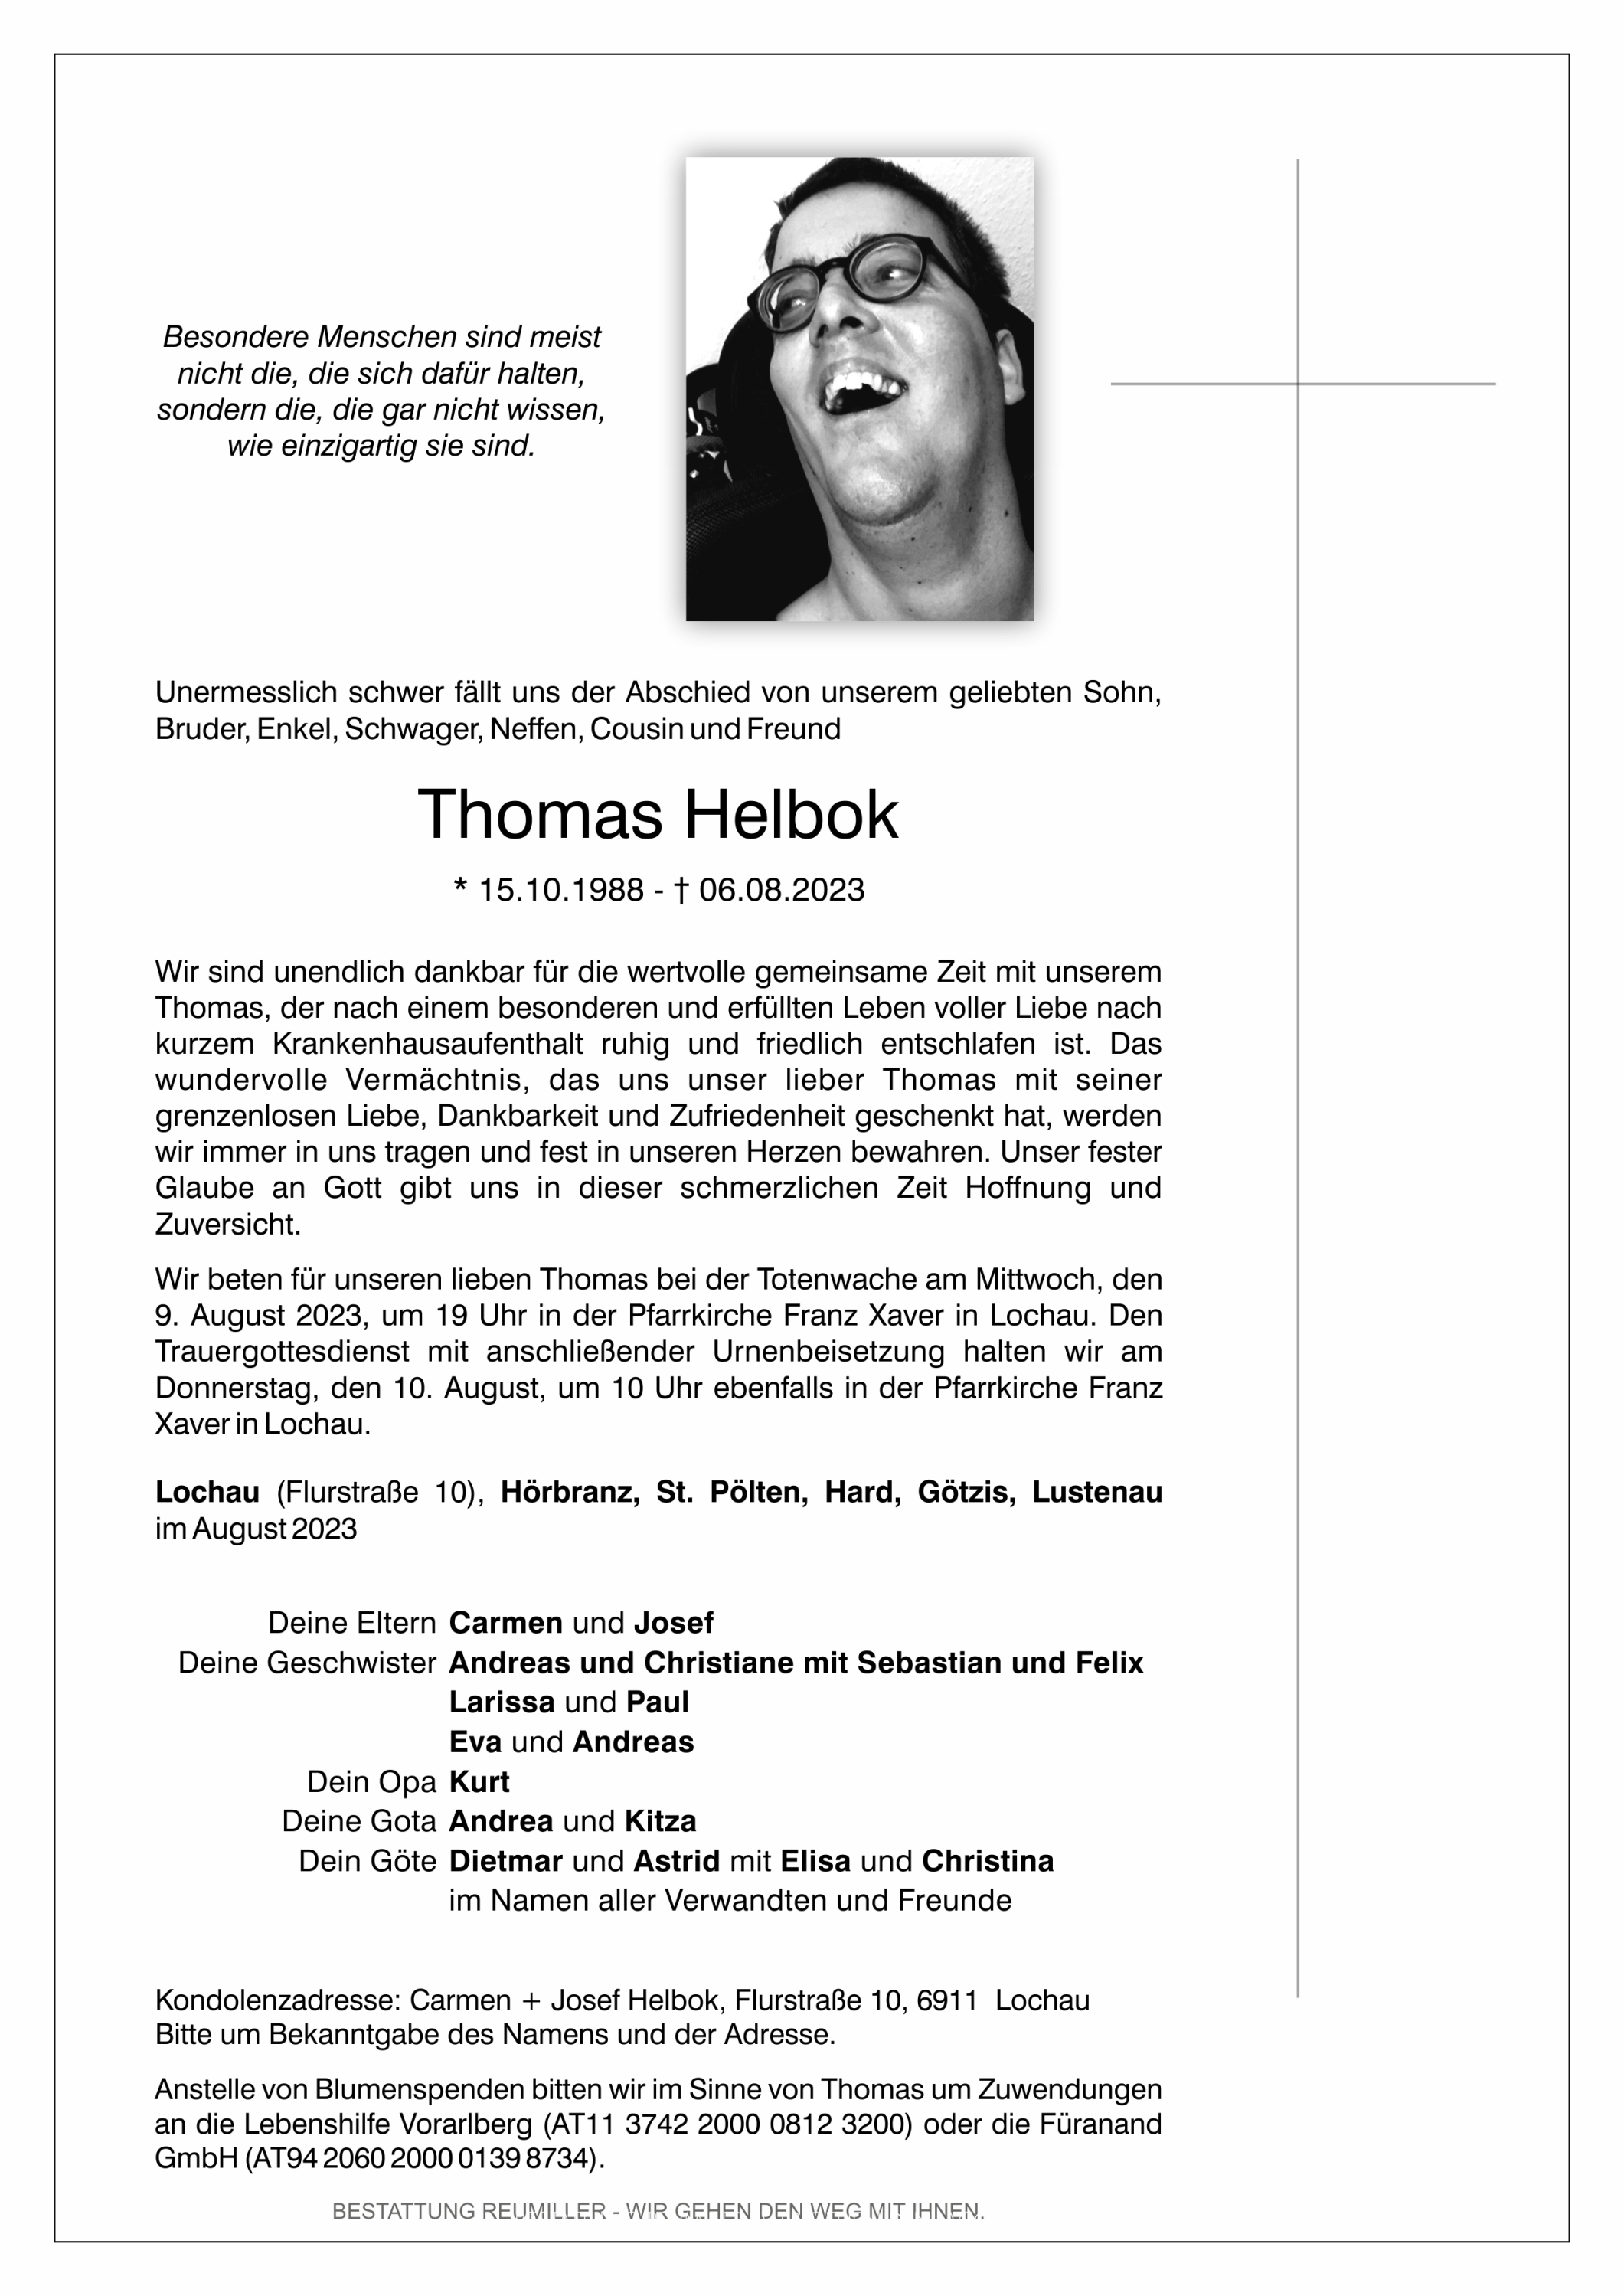 Thomas Helbok